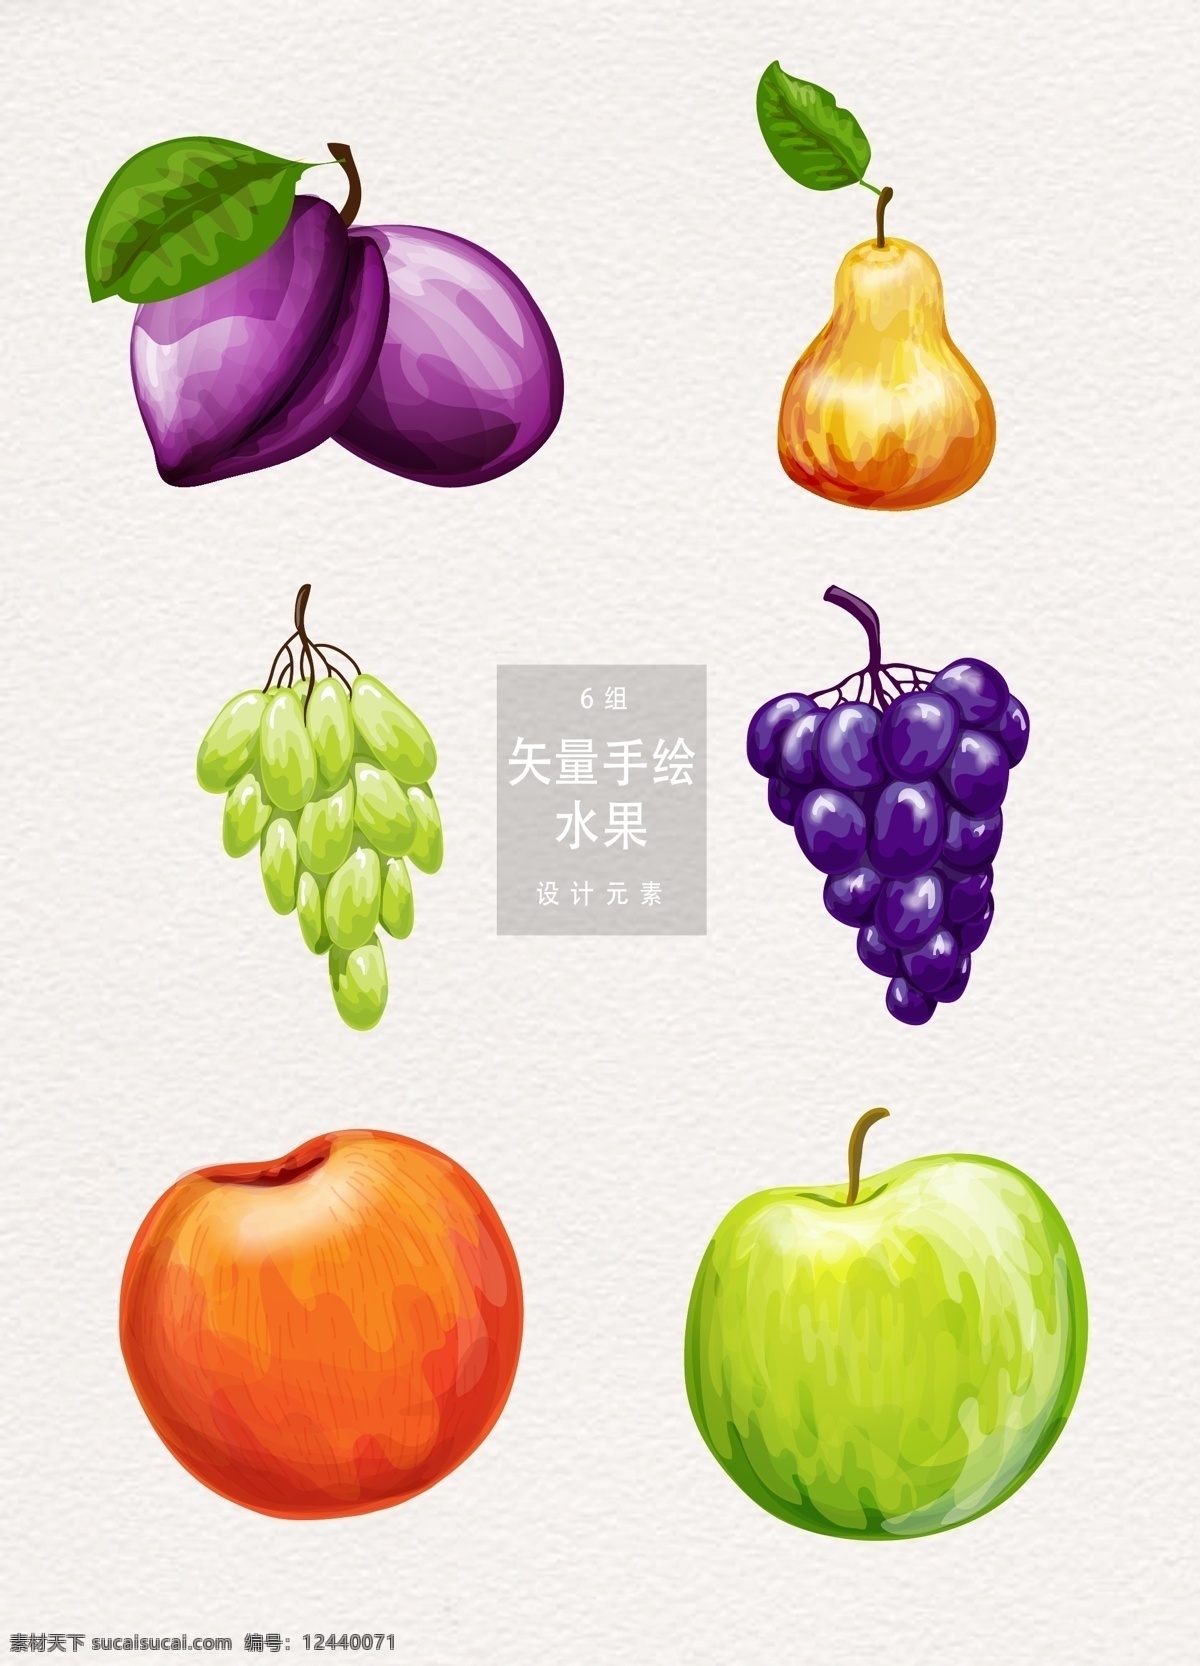 手绘 水果 矢量 夏季 植物 葡萄 苹果 夏天 西瓜 元素 手绘水果 食物 ai素材 梨子